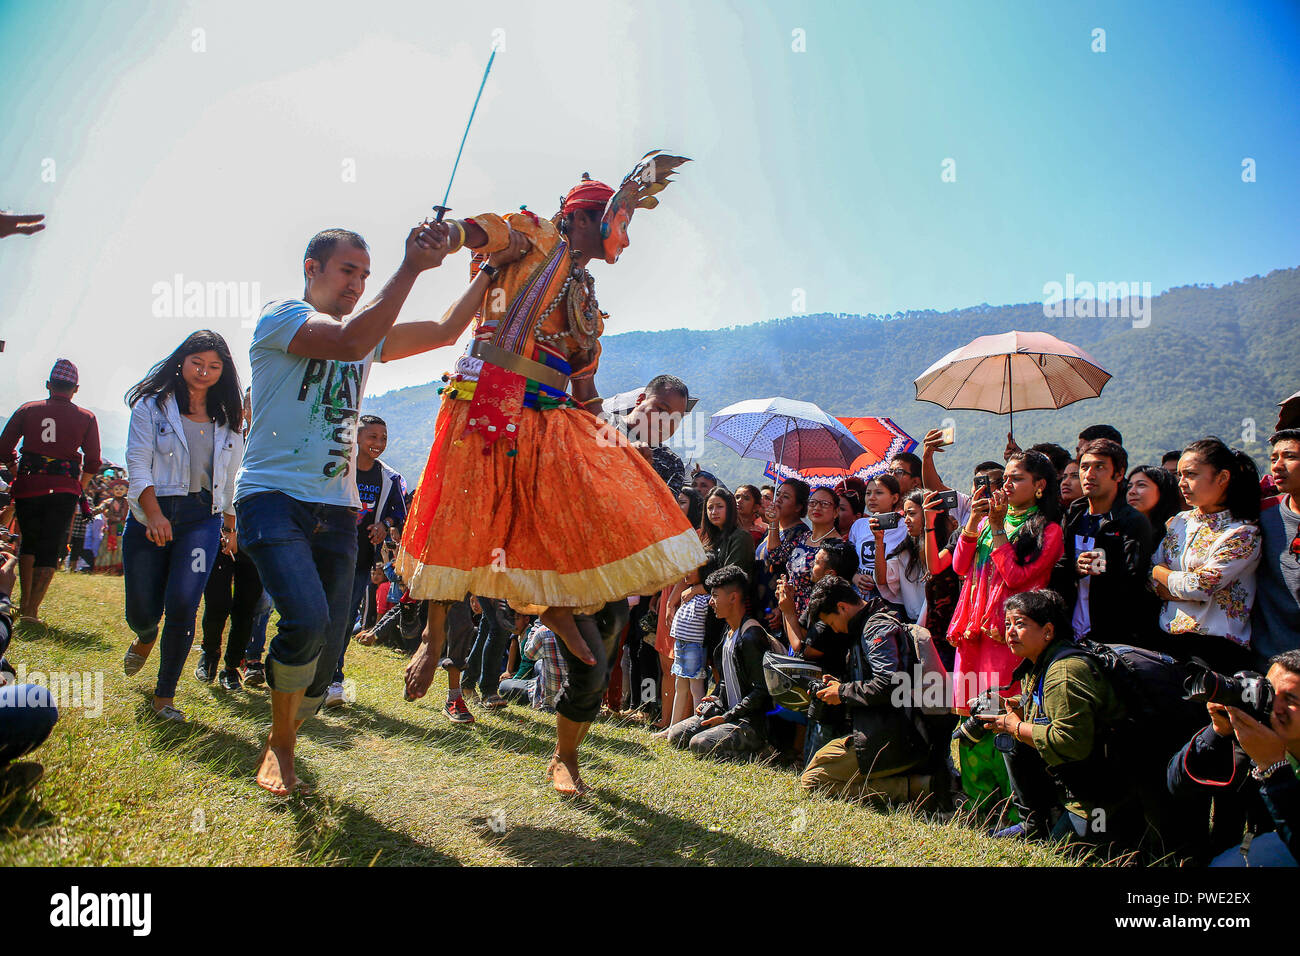 Eine Nepalesische devotee gekleidet als Gottheit springt während der Prozession von Shikali Festival. Shikali Festival 300 Jahre alt Festival feierte durch ethnische Newari Gemeinschaft von Khokana Dorf während des Festivals Anhänger tragen Masken der verschiedenen Gottheiten, Tänze aufführen, und das Opfer, Tiere in der Hoffnung, immer den Segen der Götter. Menschen bilden das Dorf Shikali Festival als Alternative von dashain Festival feiern, feiert den Sieg der Götter über das Böse. Stockfoto